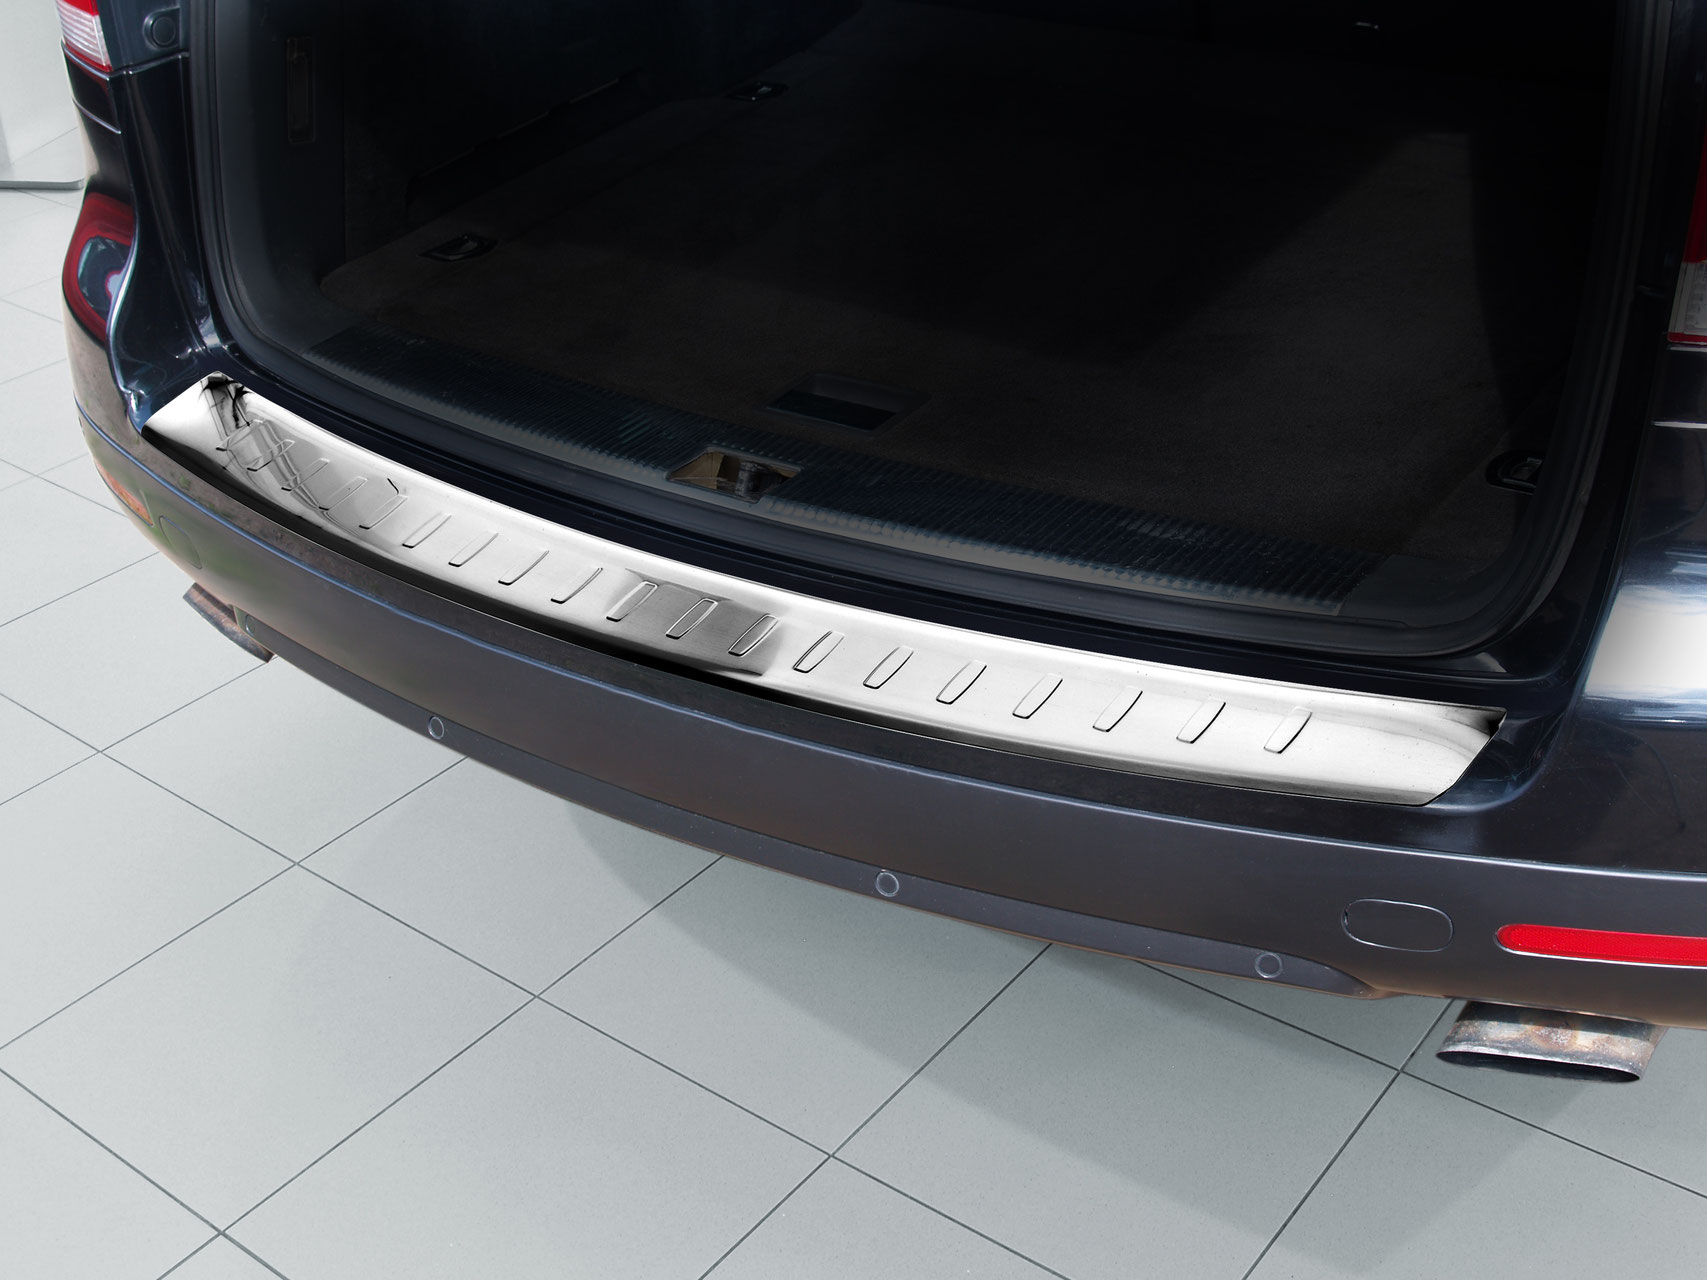 Ladekantenschutz für VW Touareg - Schutz für die Ladekante Ihres Fahrzeuges | Abdeckblenden